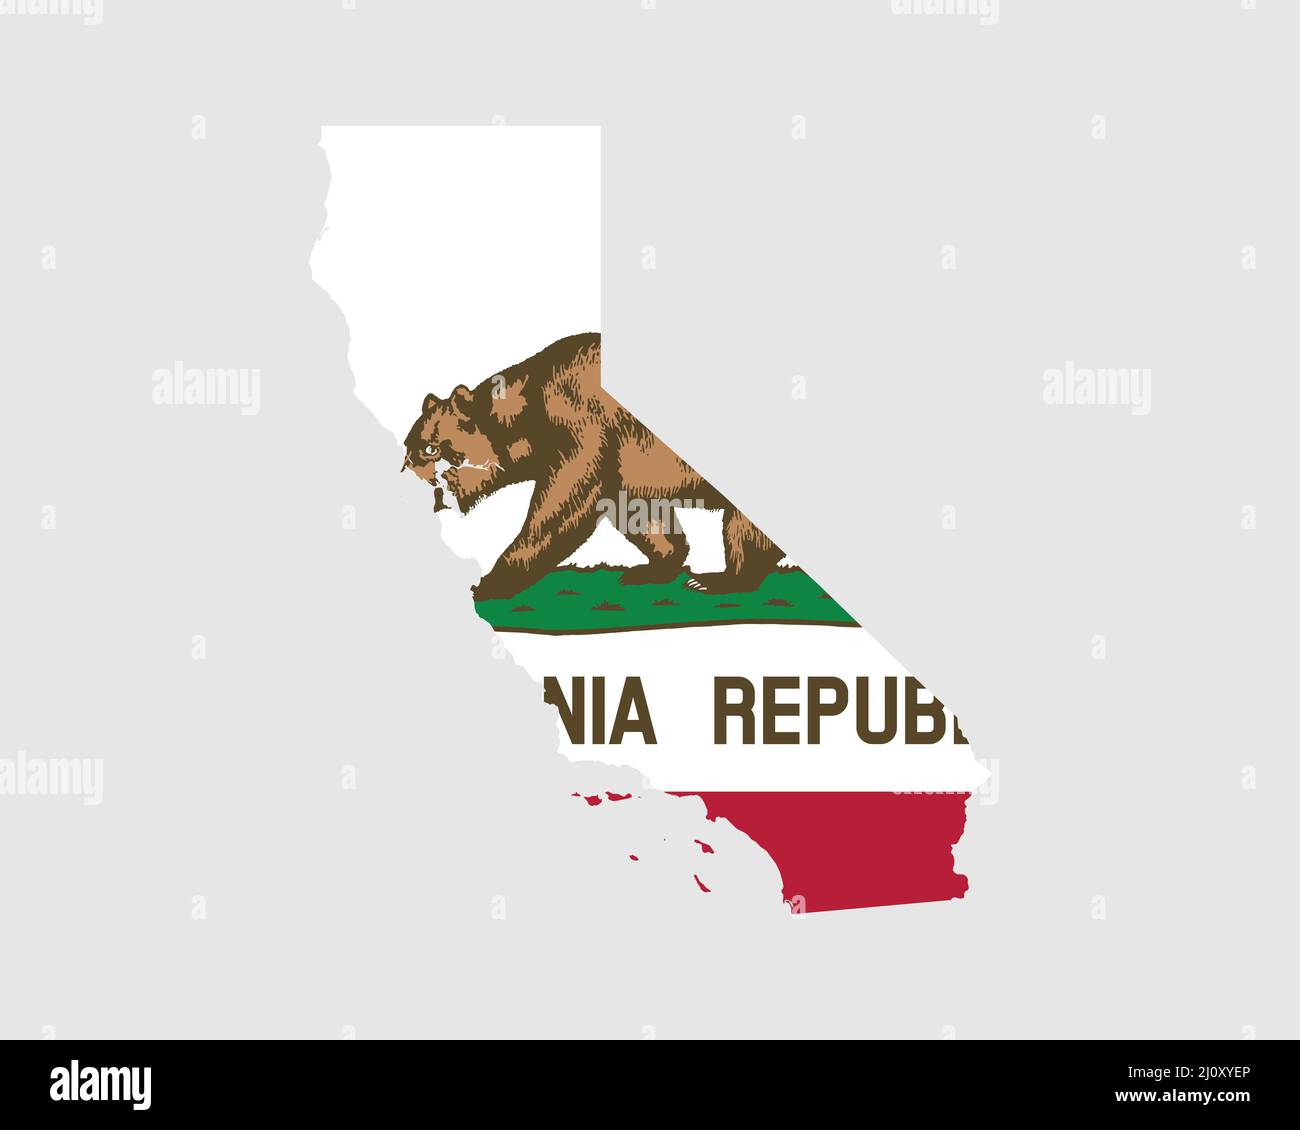 Drapeau de carte de Californie. Carte de la Californie, Etats-Unis avec le drapeau de l'Etat californien. États-Unis, Amérique, États-Unis d'Amérique, États-Unis, États-Unis et Californie Illustration de Vecteur